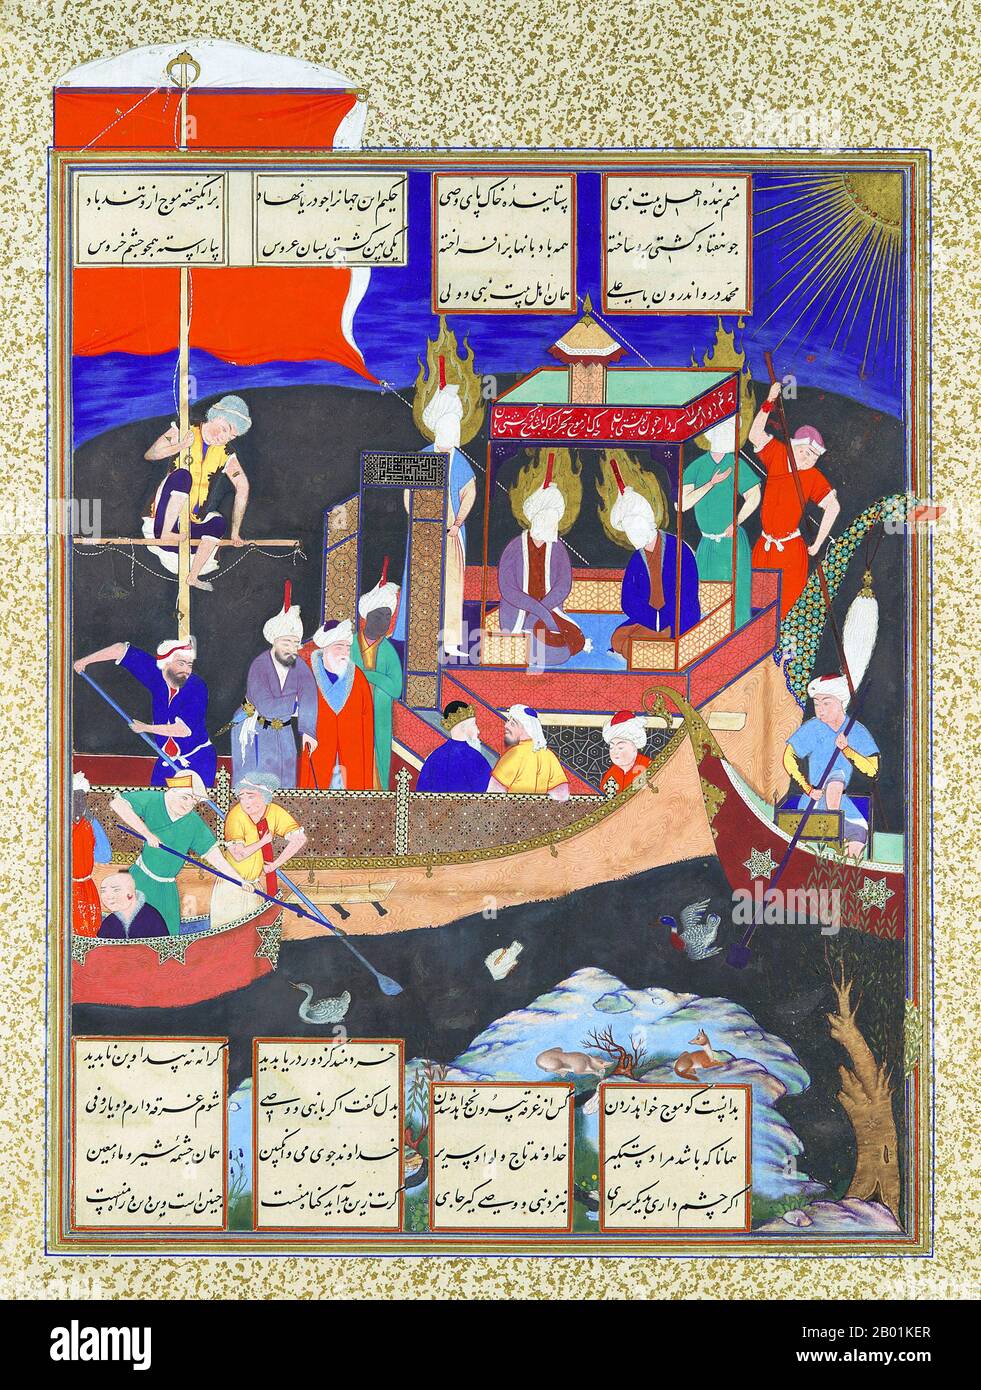 Iran/Persien: Firdausi's Parable of the Ship of Shi'ism. Miniatur-Folio von Mirza 'Ali (fl. 1525-1575), ca. 1530-1535. Das Shahnameh oder Shah-nama (Šāhnāmeh, „das Buch der Könige“) ist ein langes episches Gedicht, das der persische Dichter Ferdowsi zwischen 977 und 1010 n. Chr. geschrieben hat und das nationale Epos des Iran und verwandter perso-iranischer Kulturen ist. Der Schahnameh besteht aus etwa 60.000 Versen und erzählt die mythische und in gewissem Maße die historische Vergangenheit des Großirans von der Erschaffung der Welt bis zur islamischen Eroberung Persiens im 7. Jahrhundert. Stockfoto